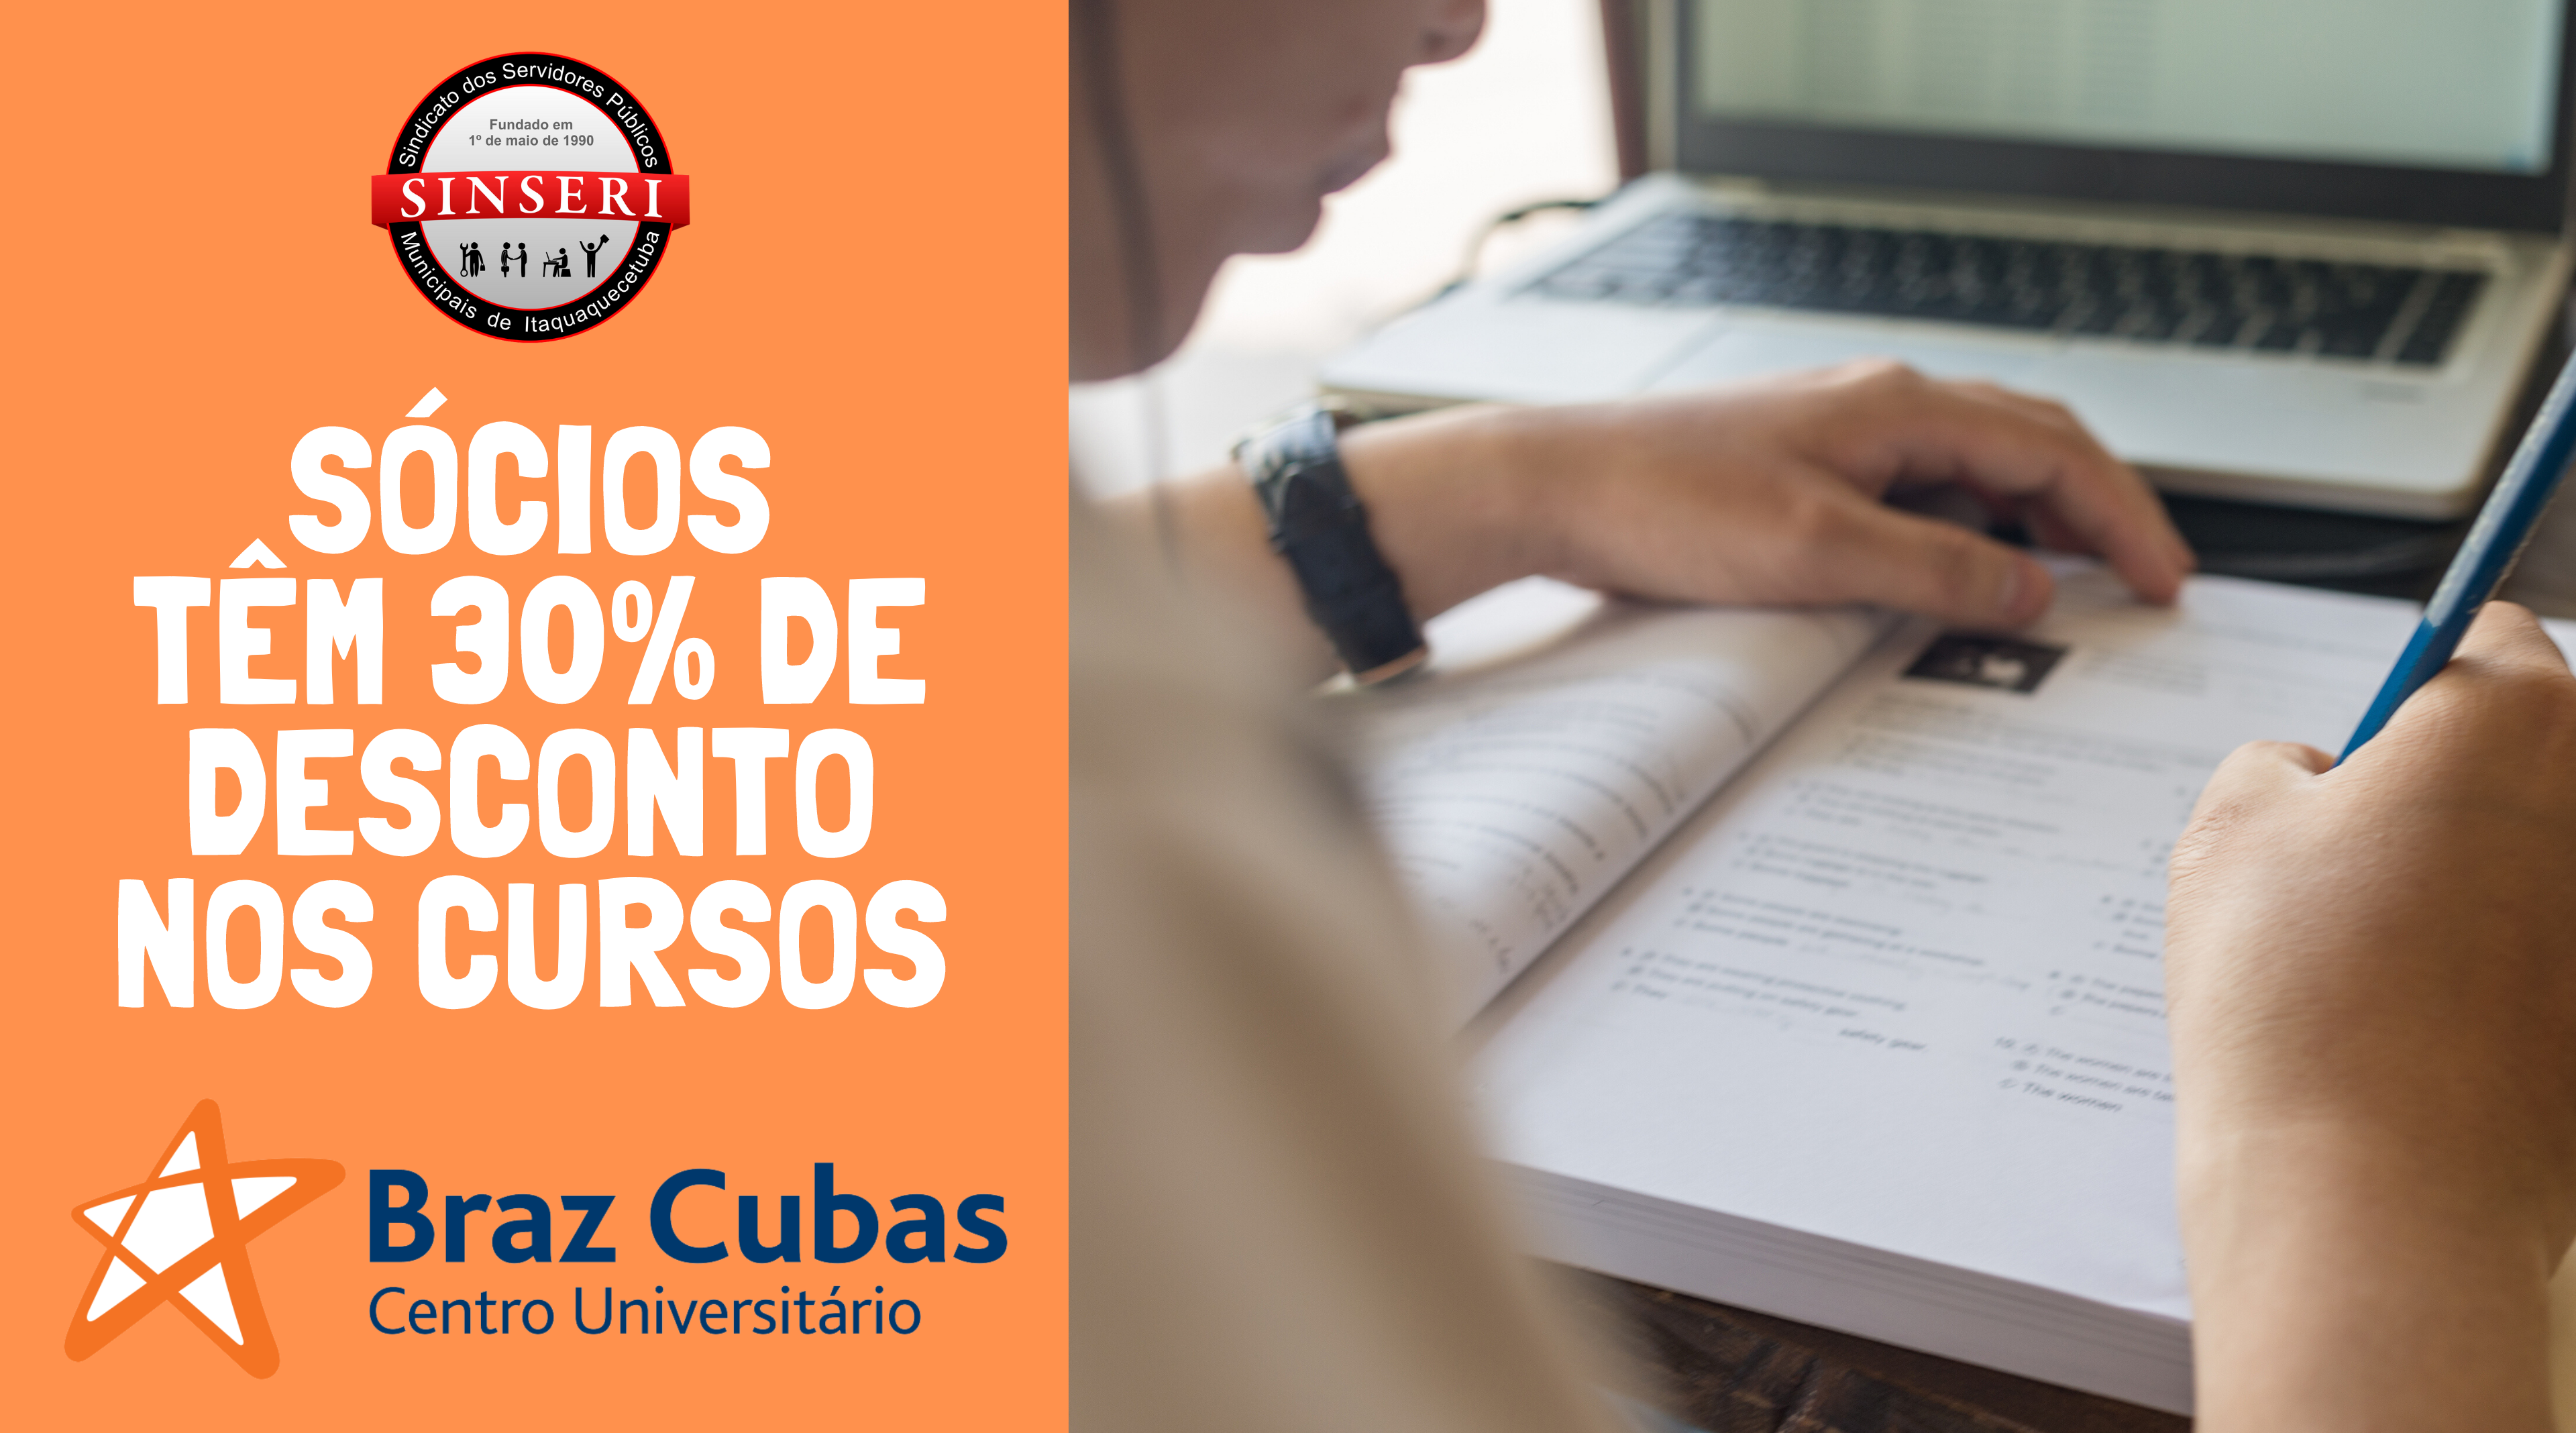 Parceria com o Centro Universitário Braz Cubas concede desconto de 30%